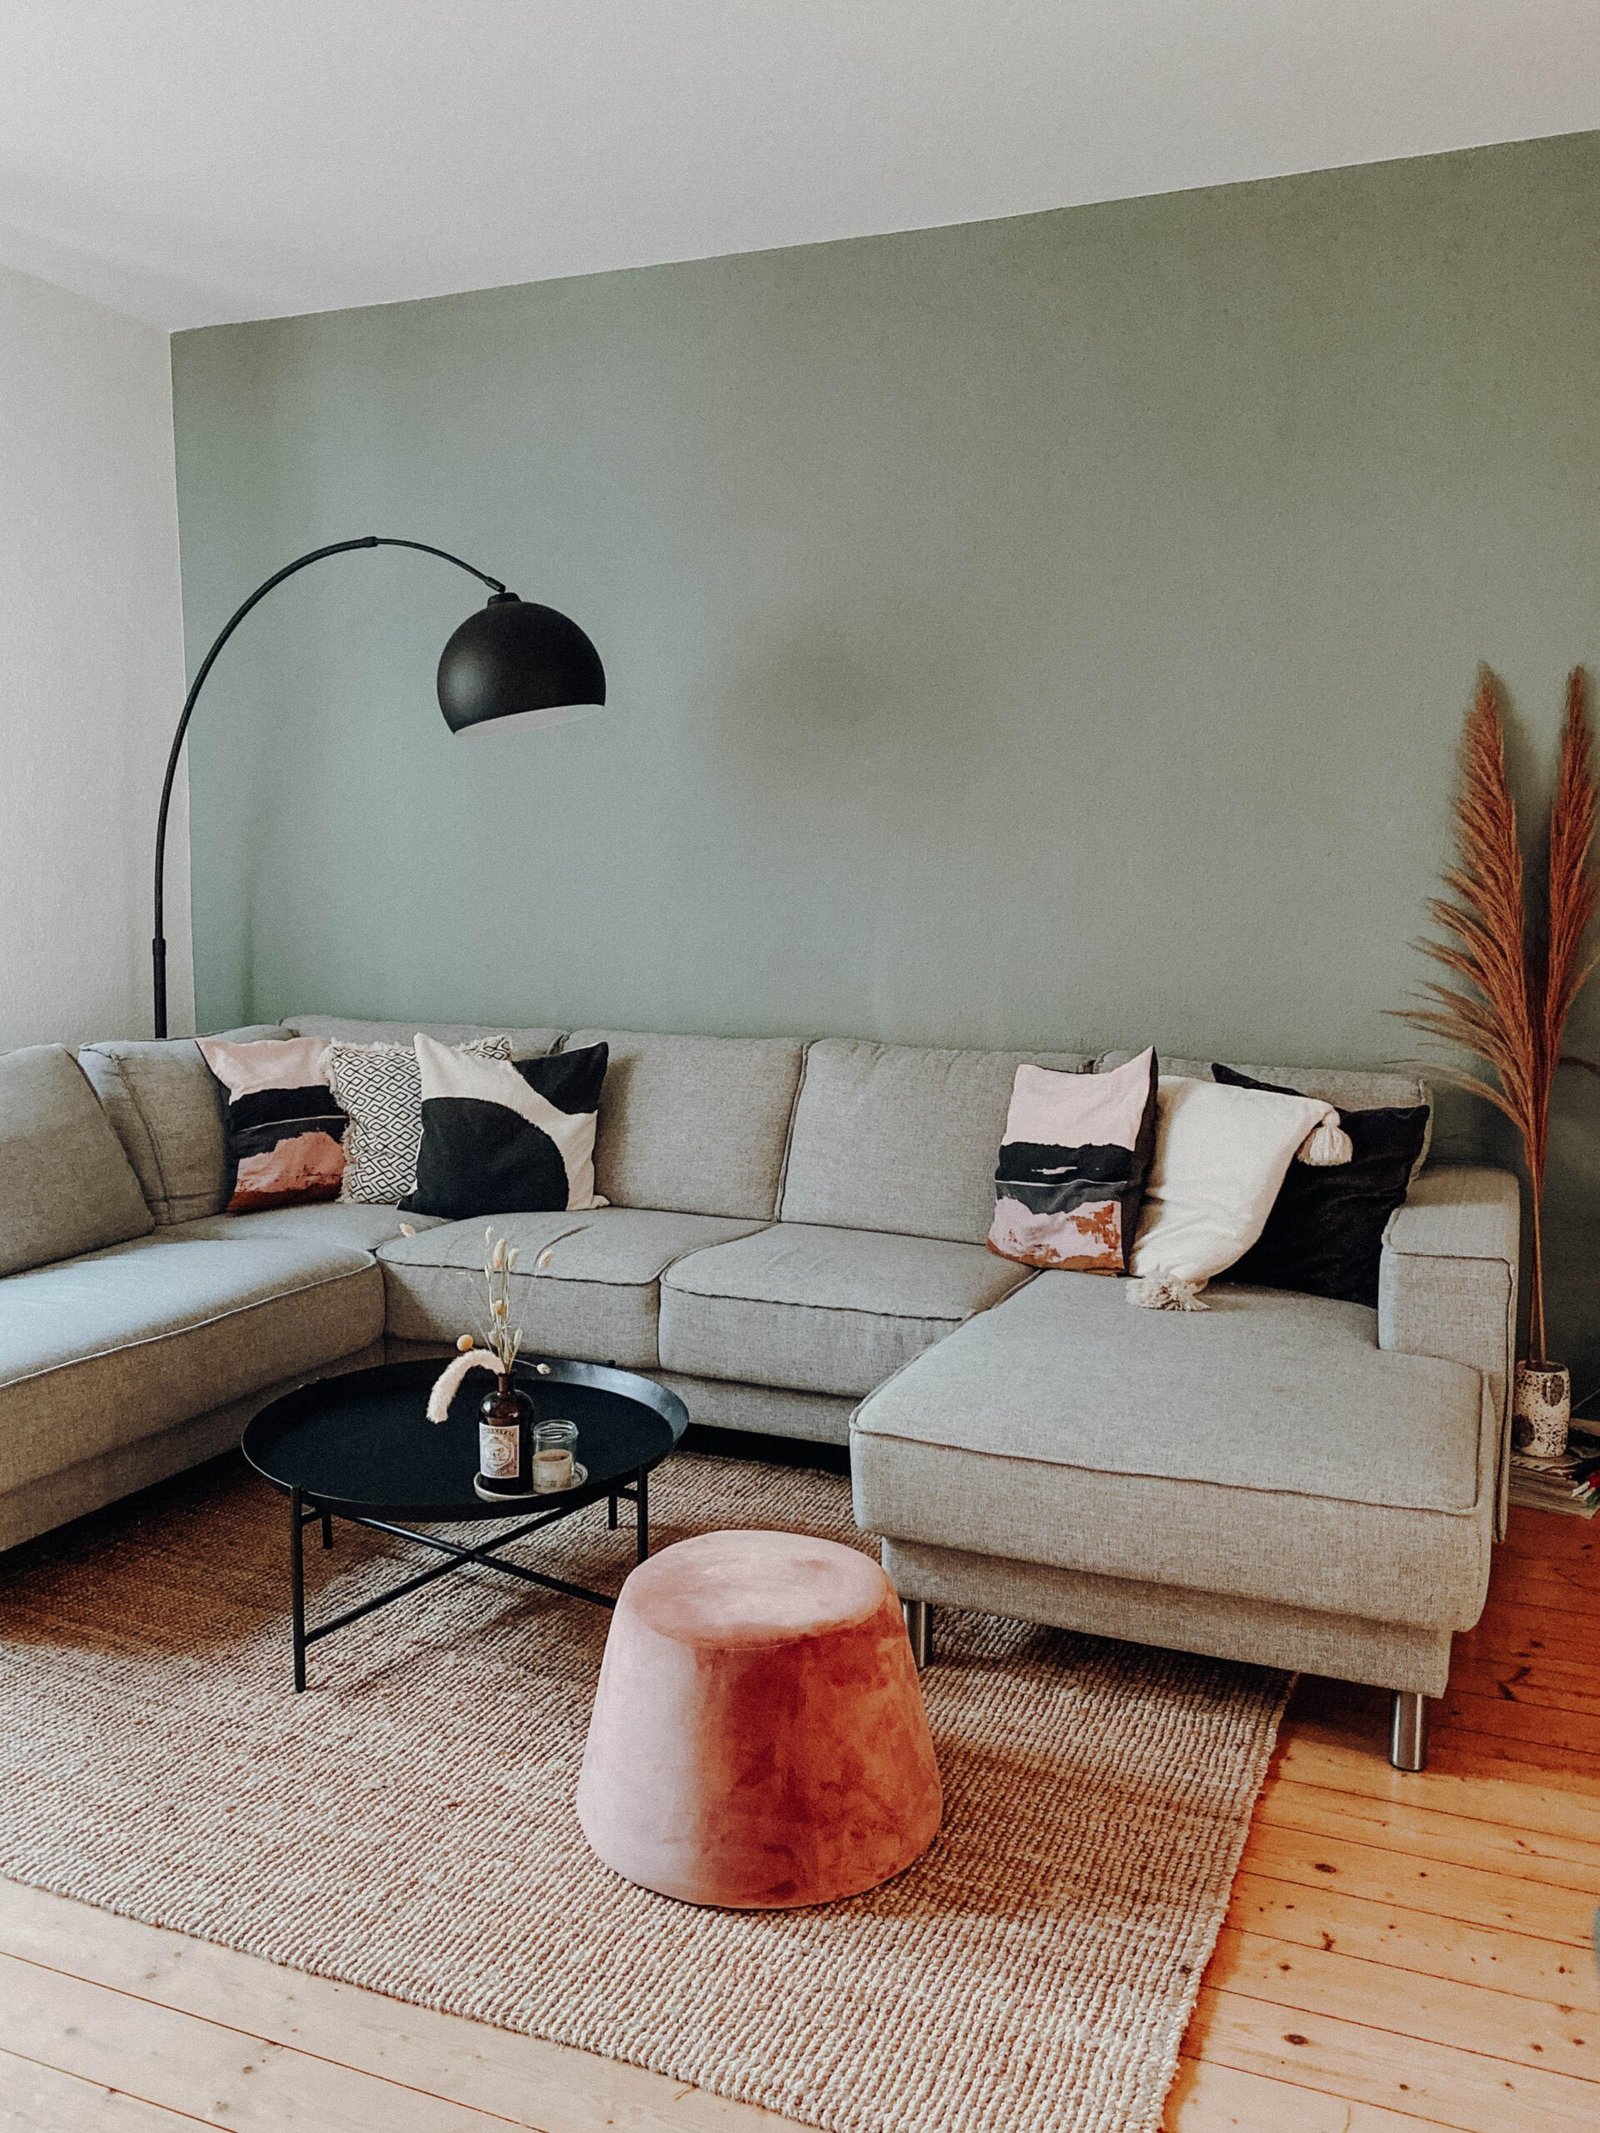 Bogenleuchten • Bilder &amp; Ideen • Couch for Bogenleuchte Wohnzimmer